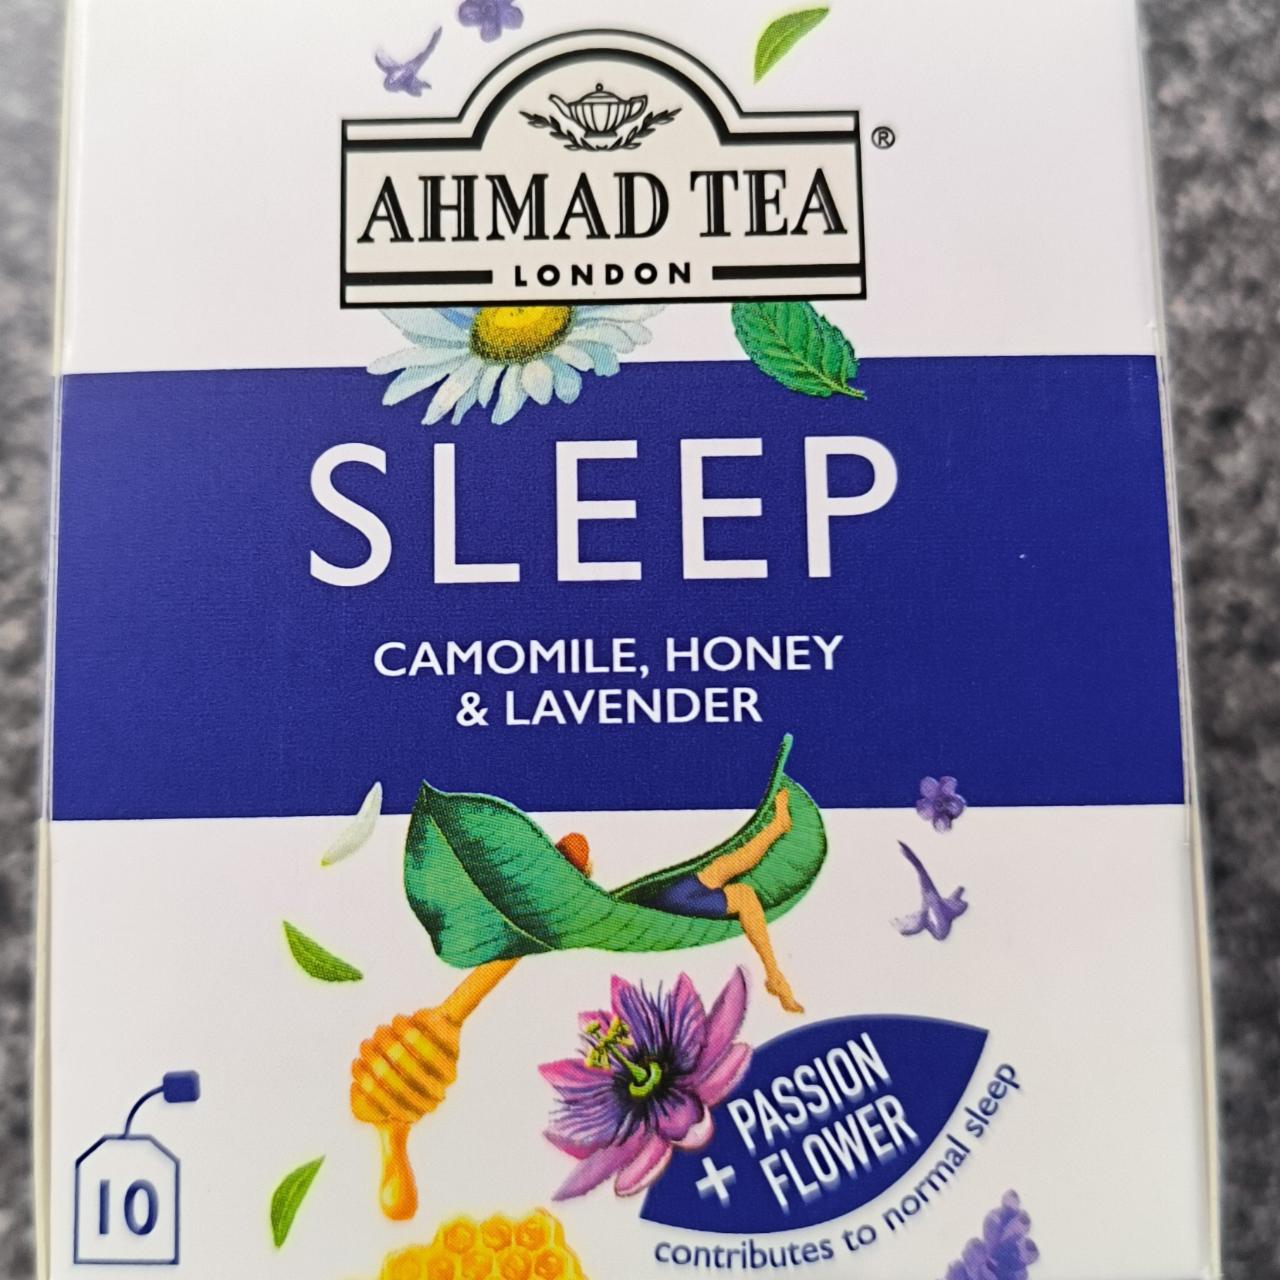 Fotografie - Sleep Camomile, Honey & Lavender Ahmad Tea London